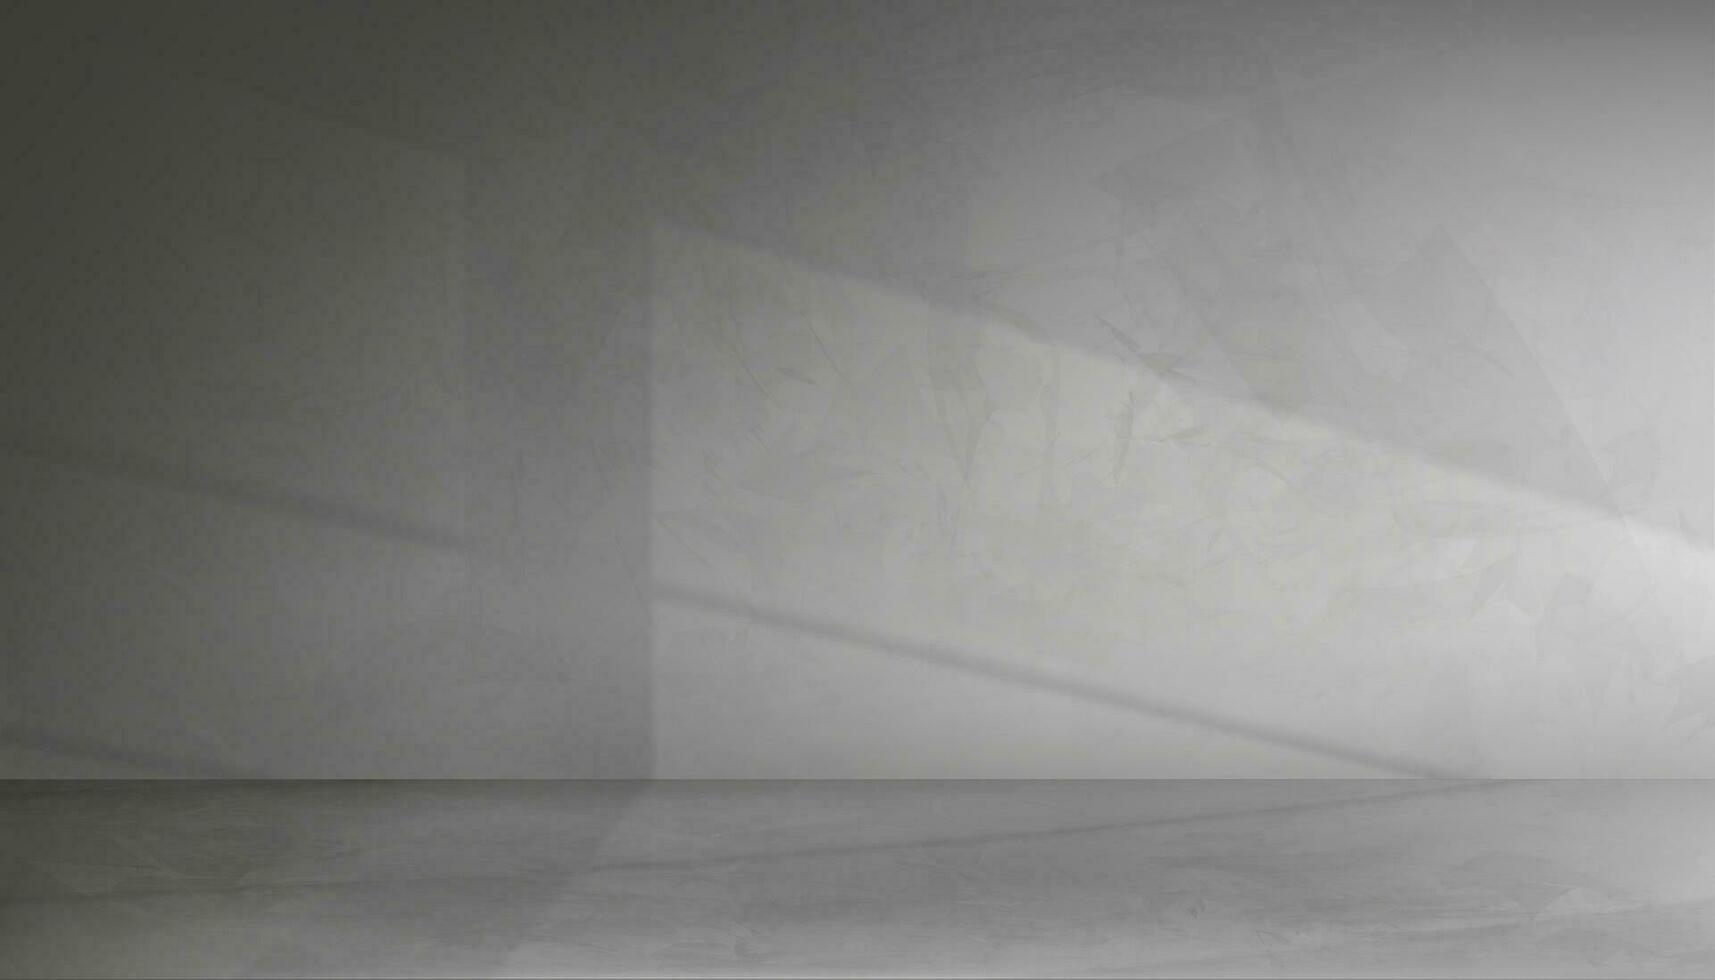 studio bakgrund vägg grå cement med golv mark, betong vägg textur med ljus, skugga fönster effekt,vecor 3d bakgrund tömma rum attrapp med kopia Plats, baner för kosmetisk produkt presentation vektor